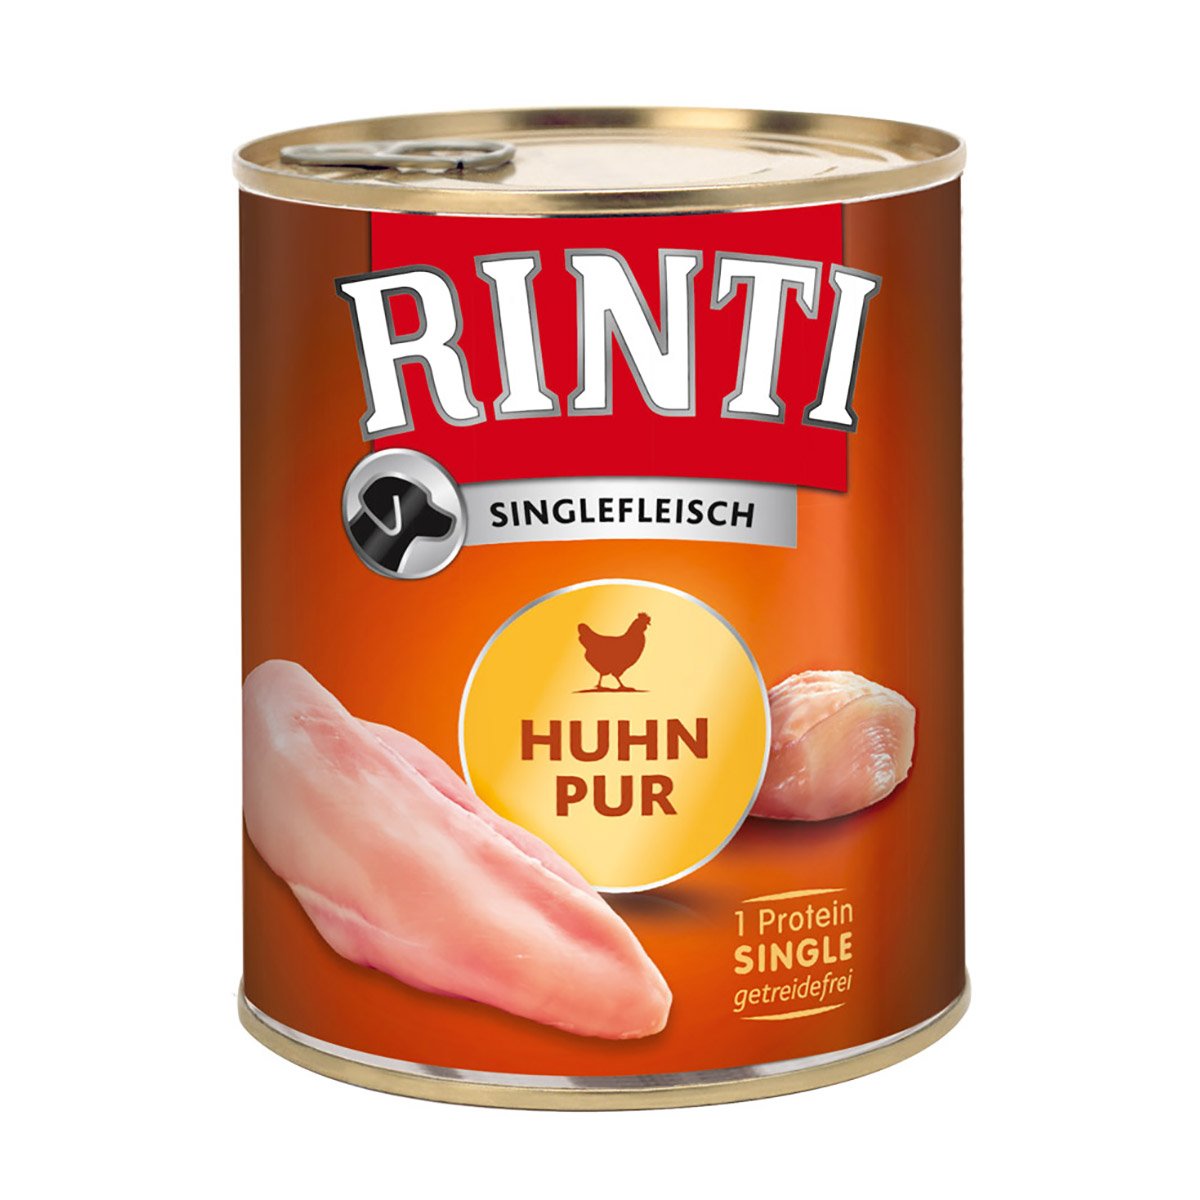 Rinti Singlefleisch Huhn pur 12x800g von Rinti